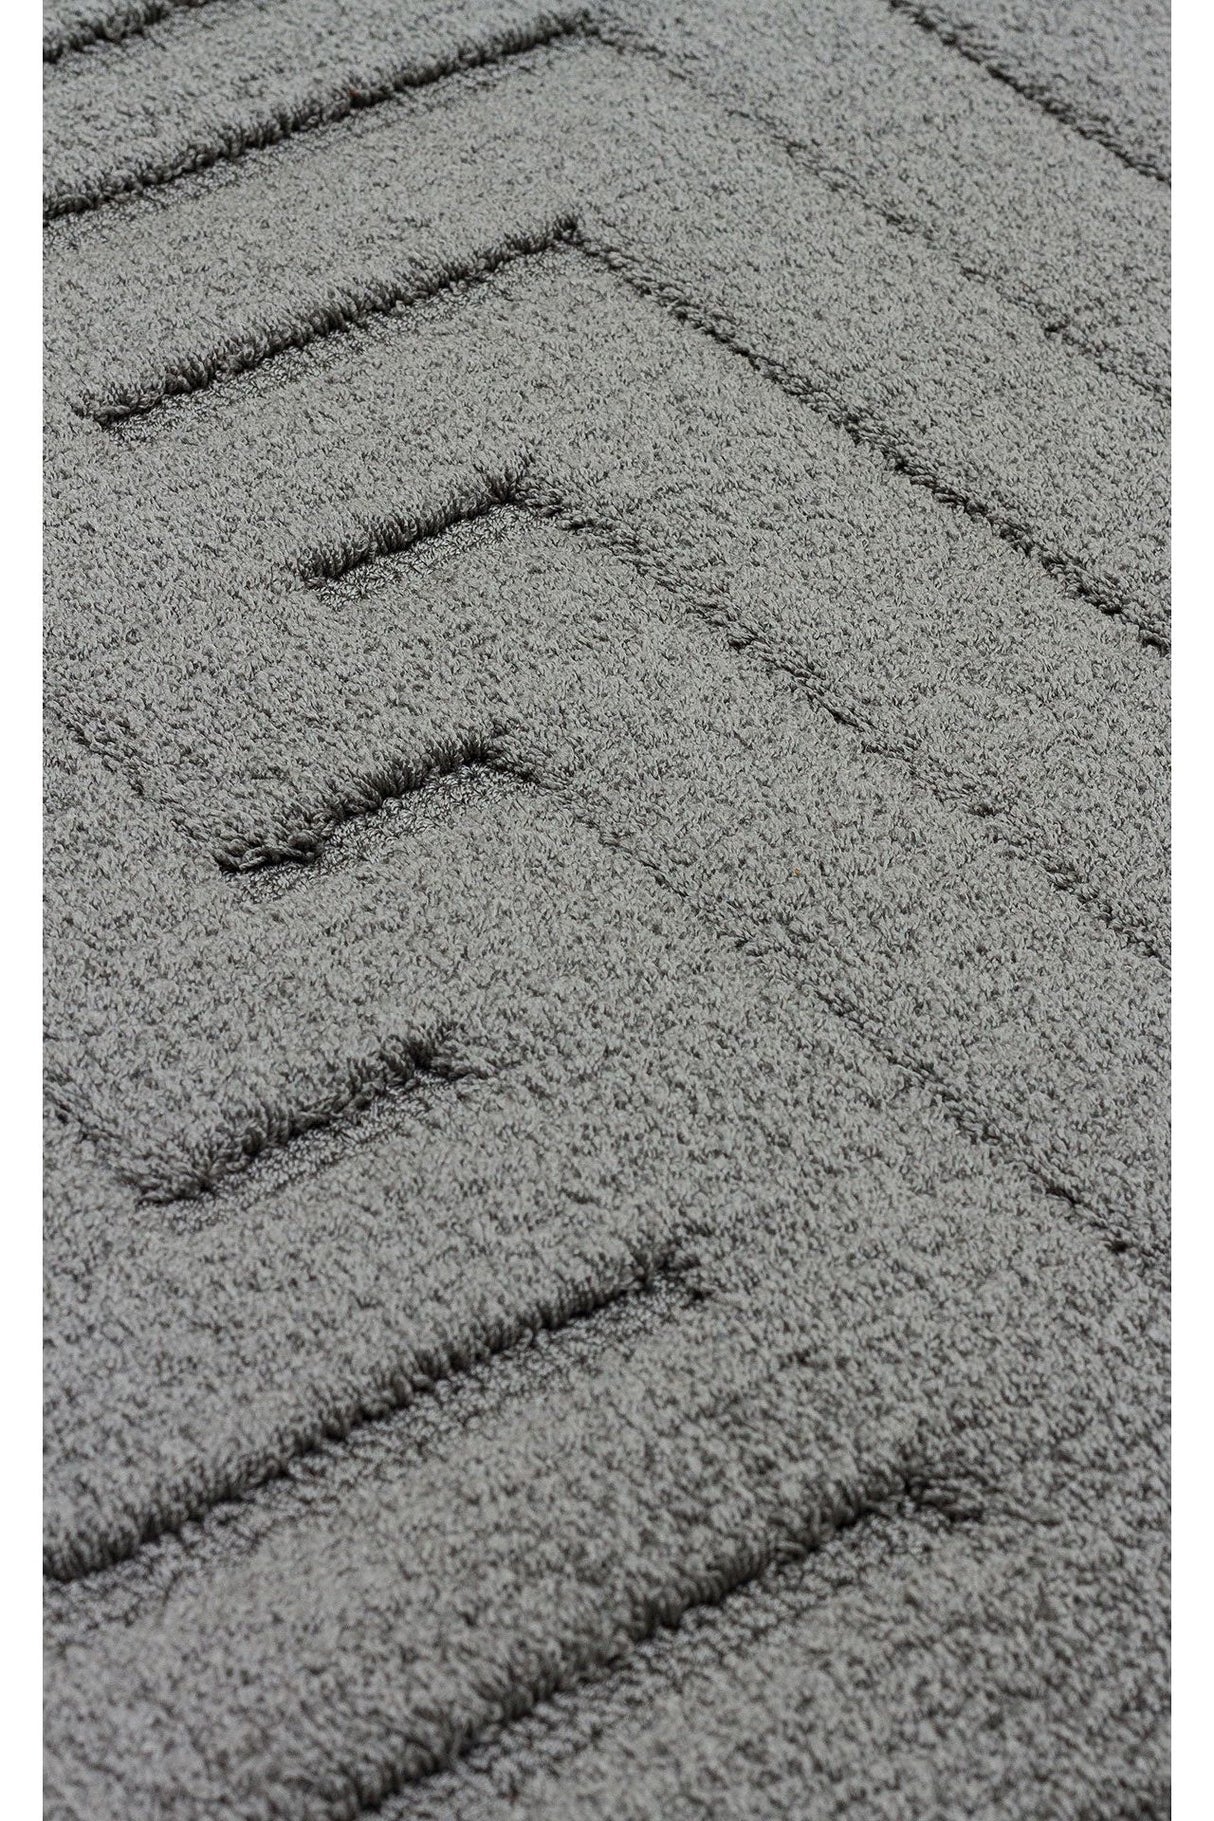 #Turkish_Carpets_Rugs# #Modern_Carpets# #Abrash_Carpets#Msr 06 Antrasit